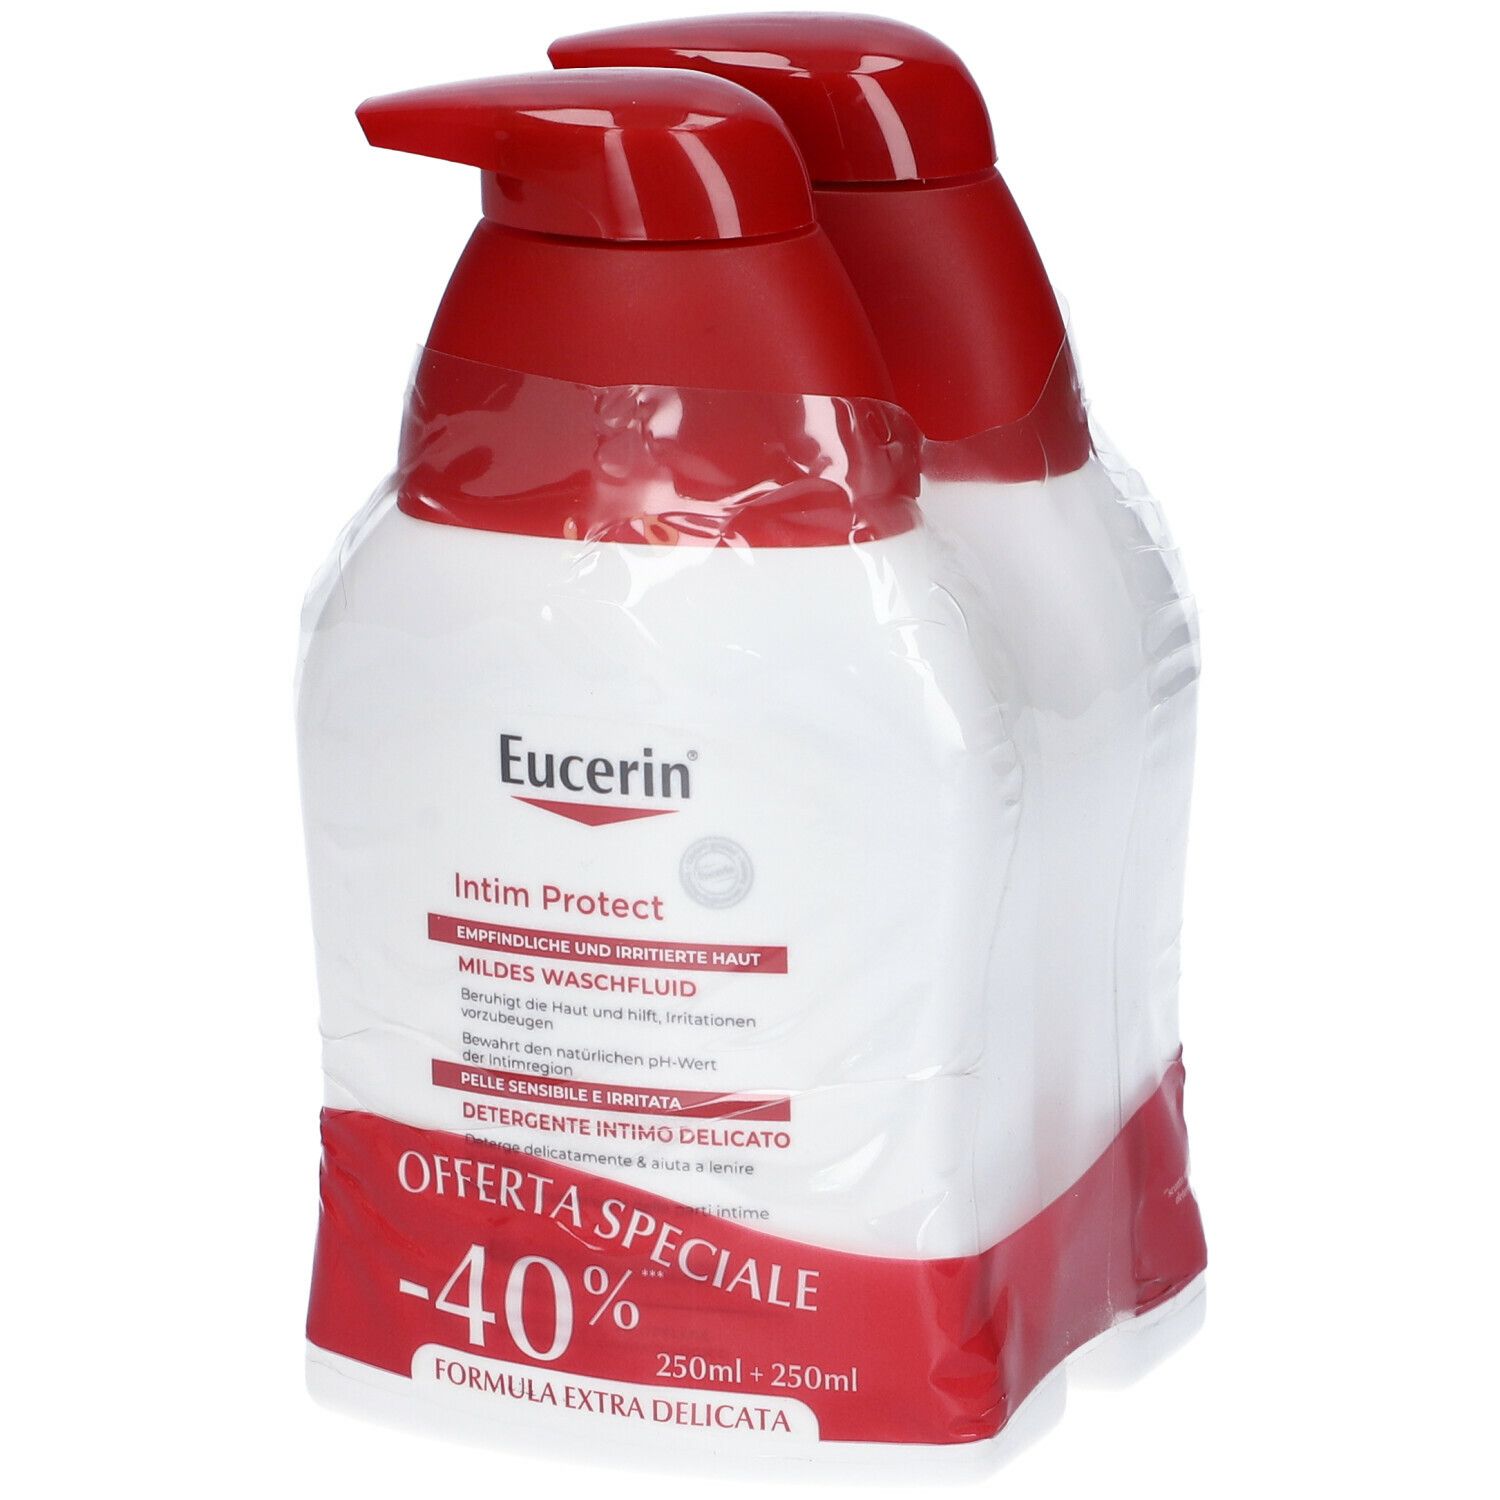 Eucerin Detergente Intimo Delicato Set da 2